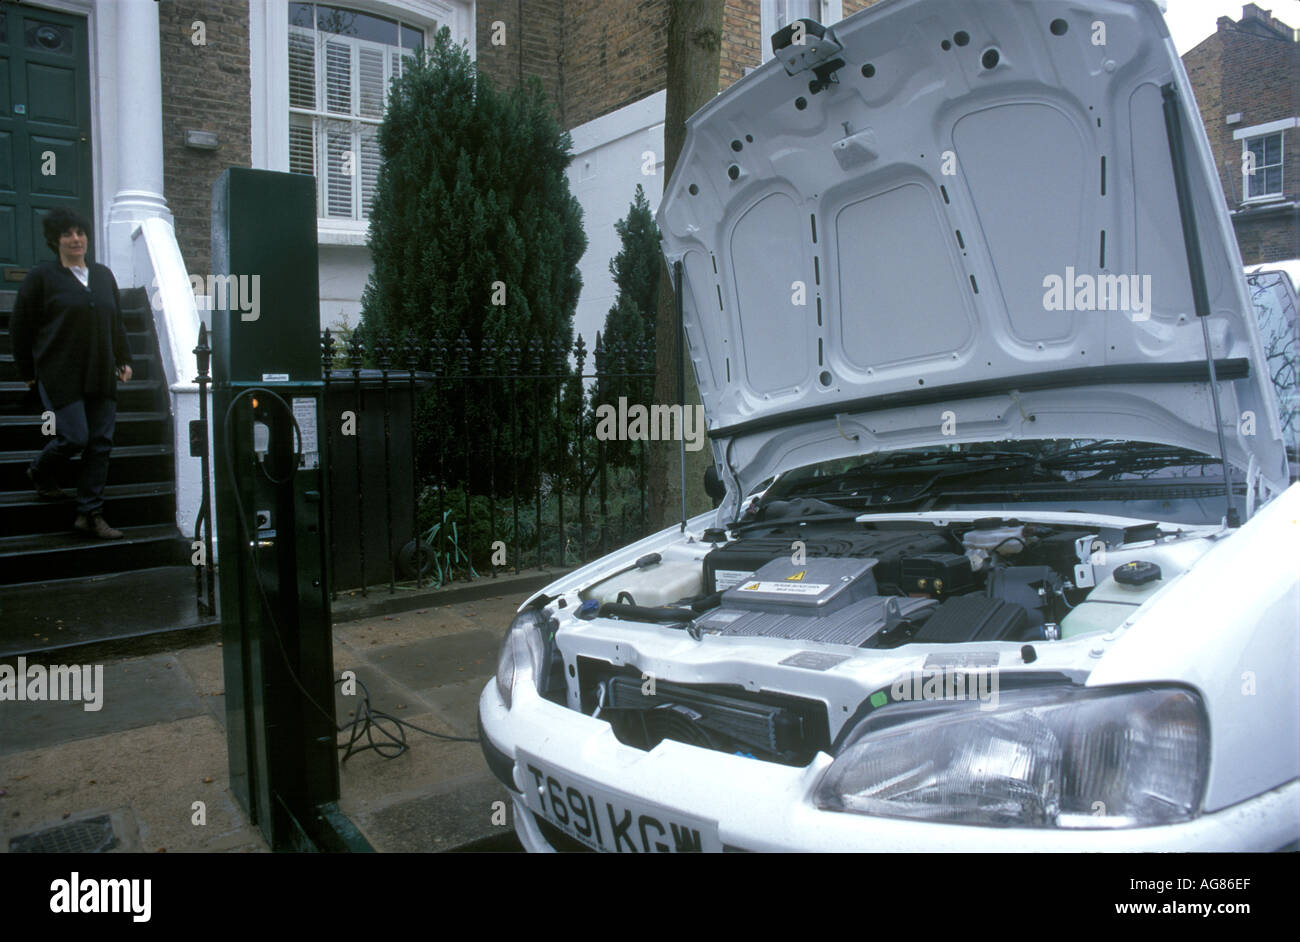 Un entraînement électrique voiture garée dans une rue résidentielle de Londres, au Royaume-Uni, s'il est en cours de charge. L'année 2003. Banque D'Images